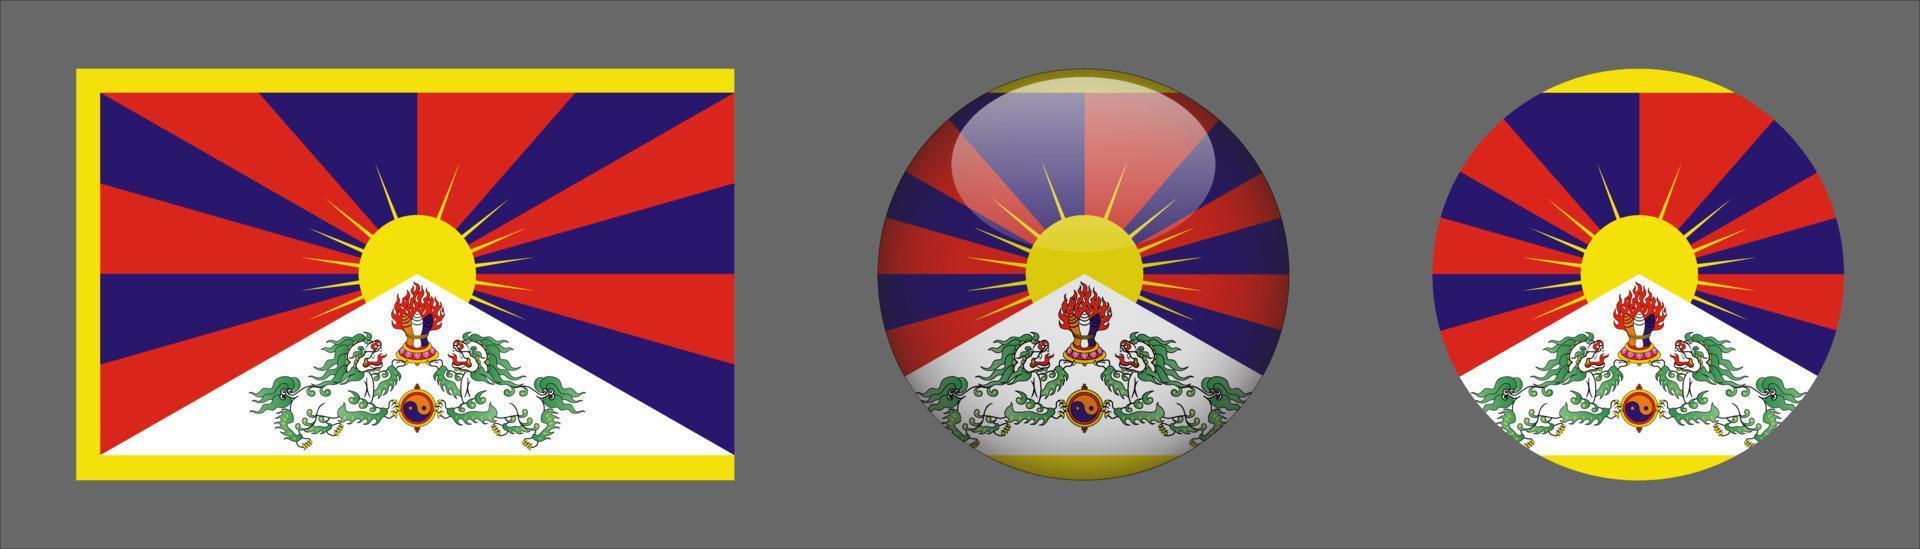 Colección de conjuntos de banderas de Tíbet, relación de tamaño original, redondeado 3d y redondeado plano. vector